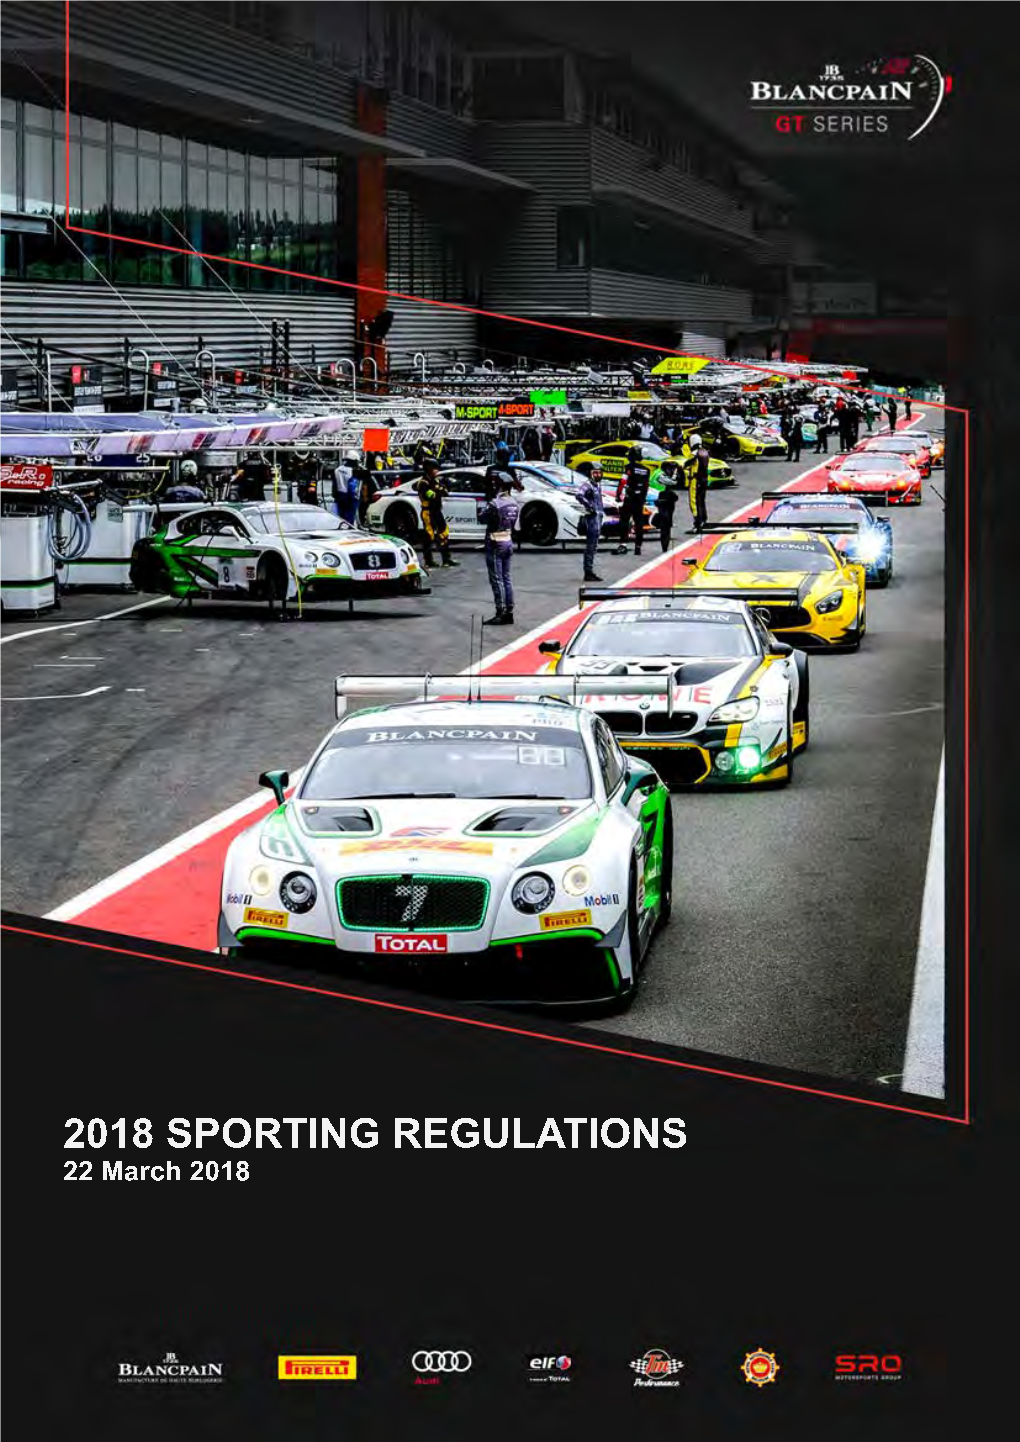 S02 Blancpain GT Series 2018 Sporting Regulations